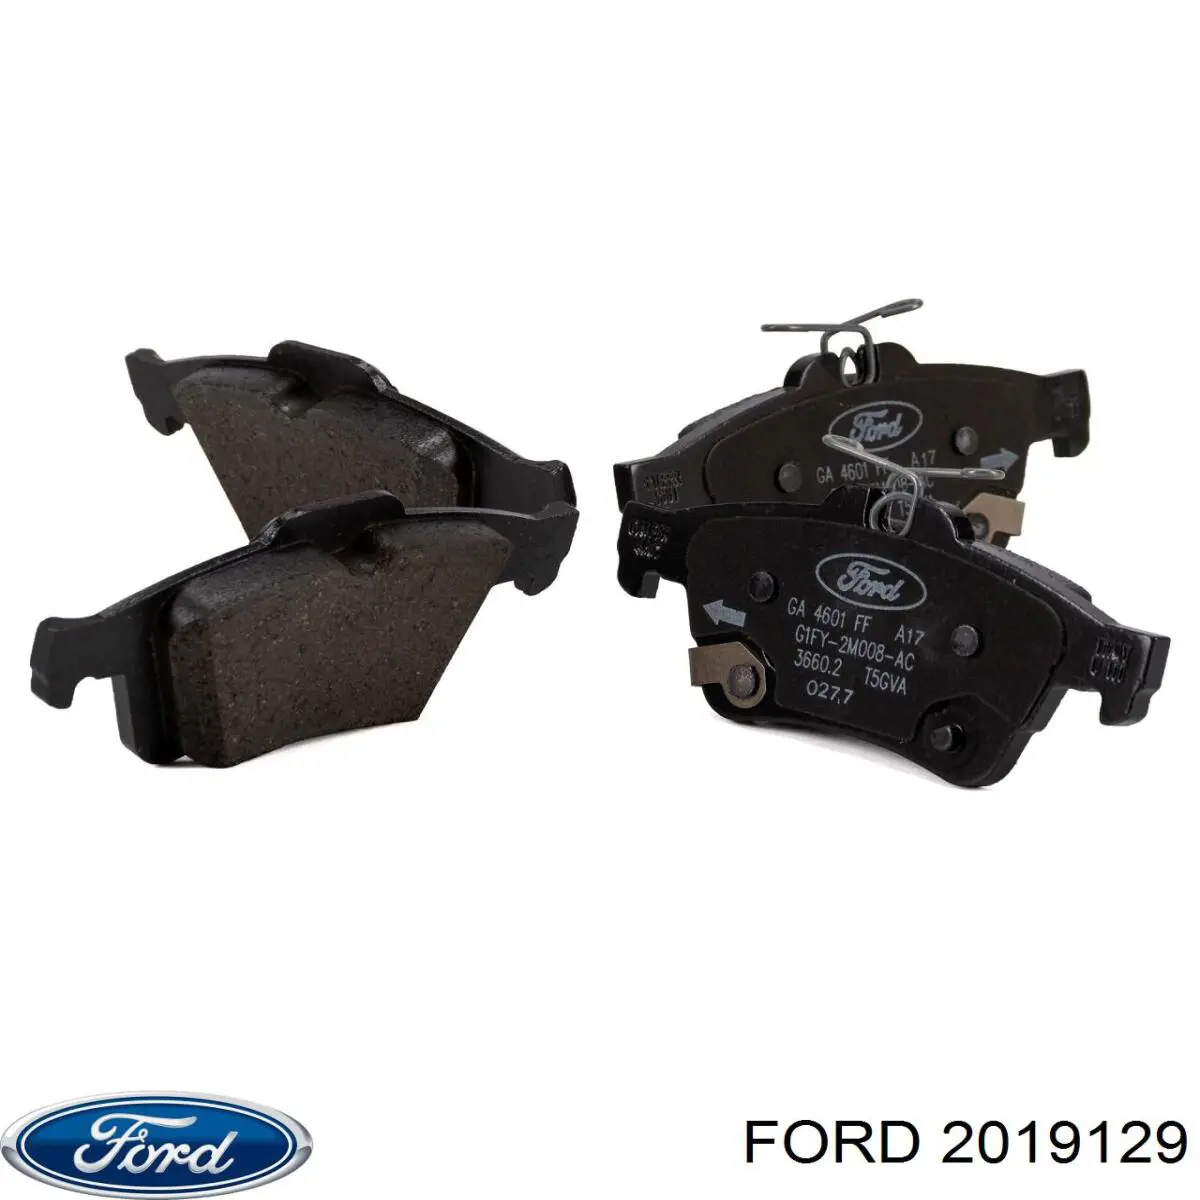 2019129 Ford колодки тормозные задние дисковые